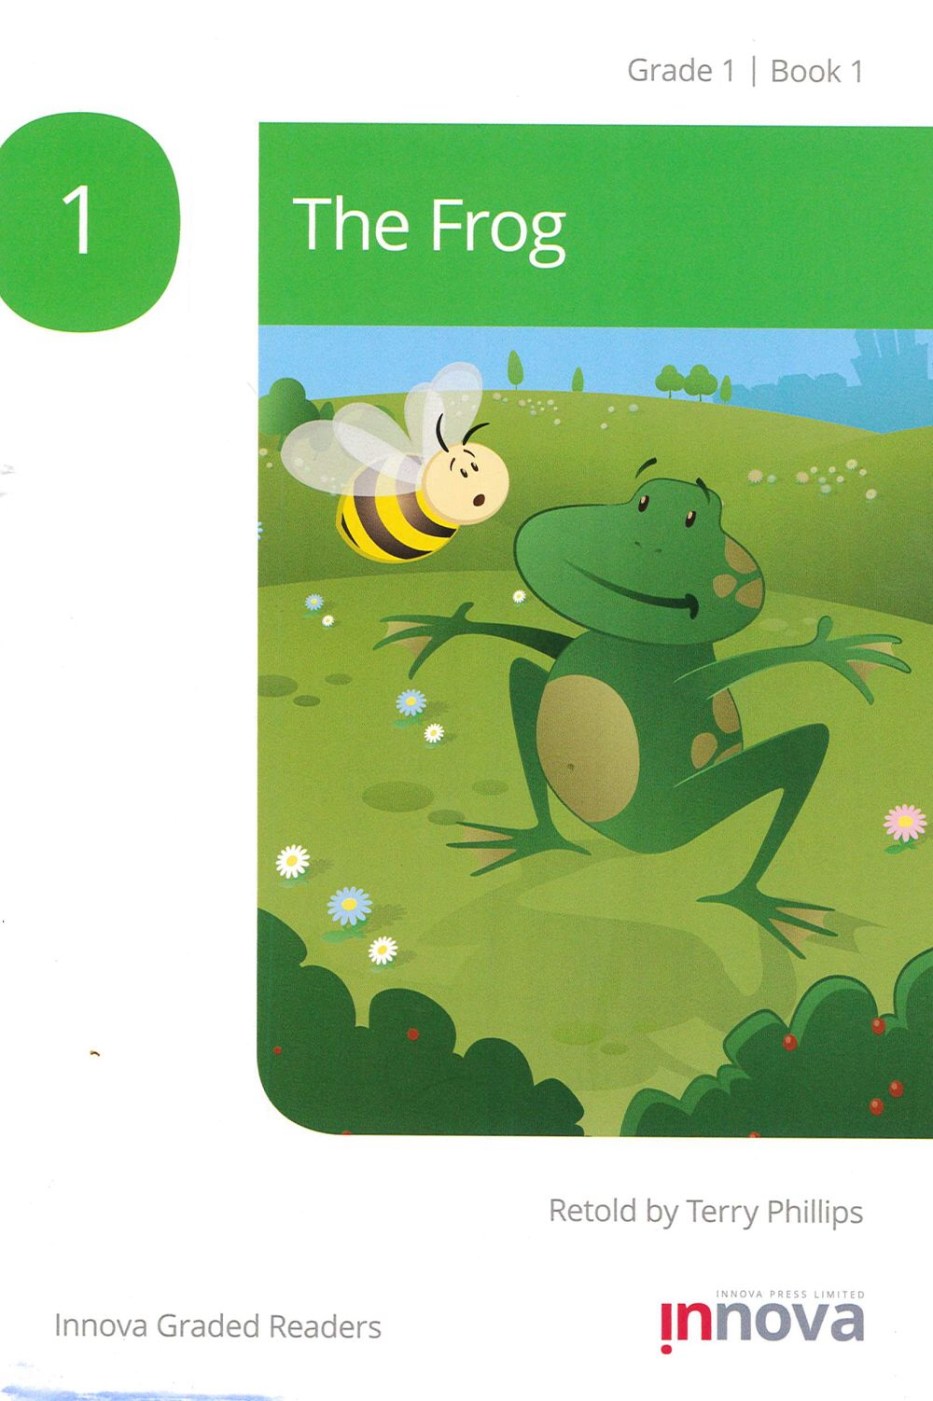 Innova Graded Readers Grade 1 (Book 1): The Frog